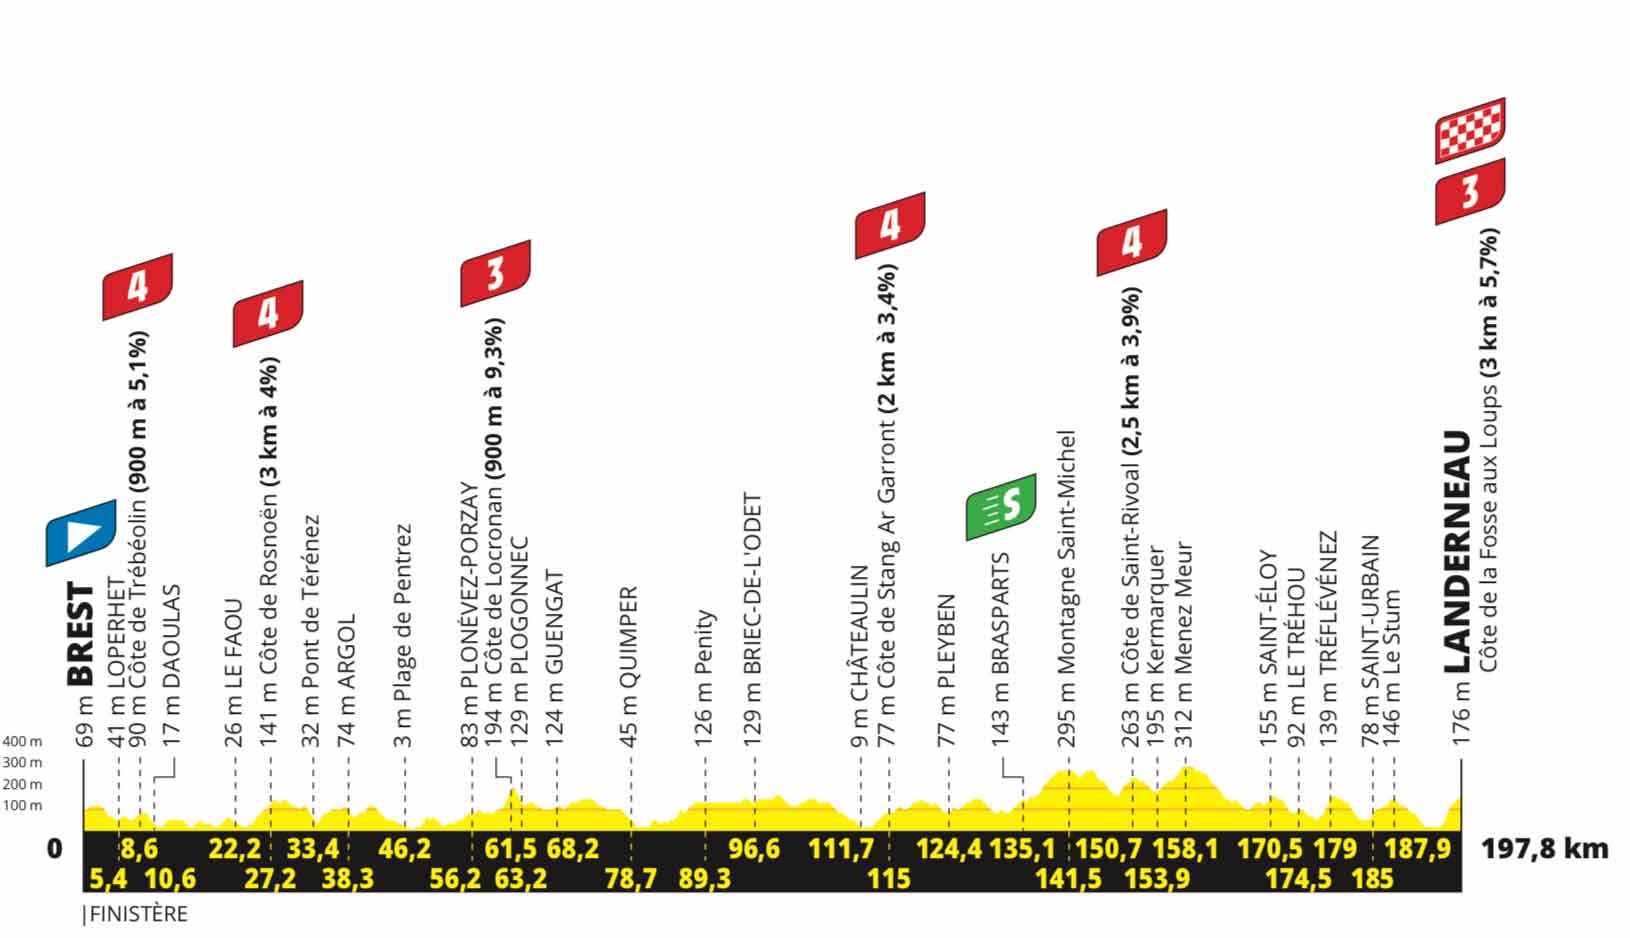 Profil der 1. Etappe der Tour de France 2021